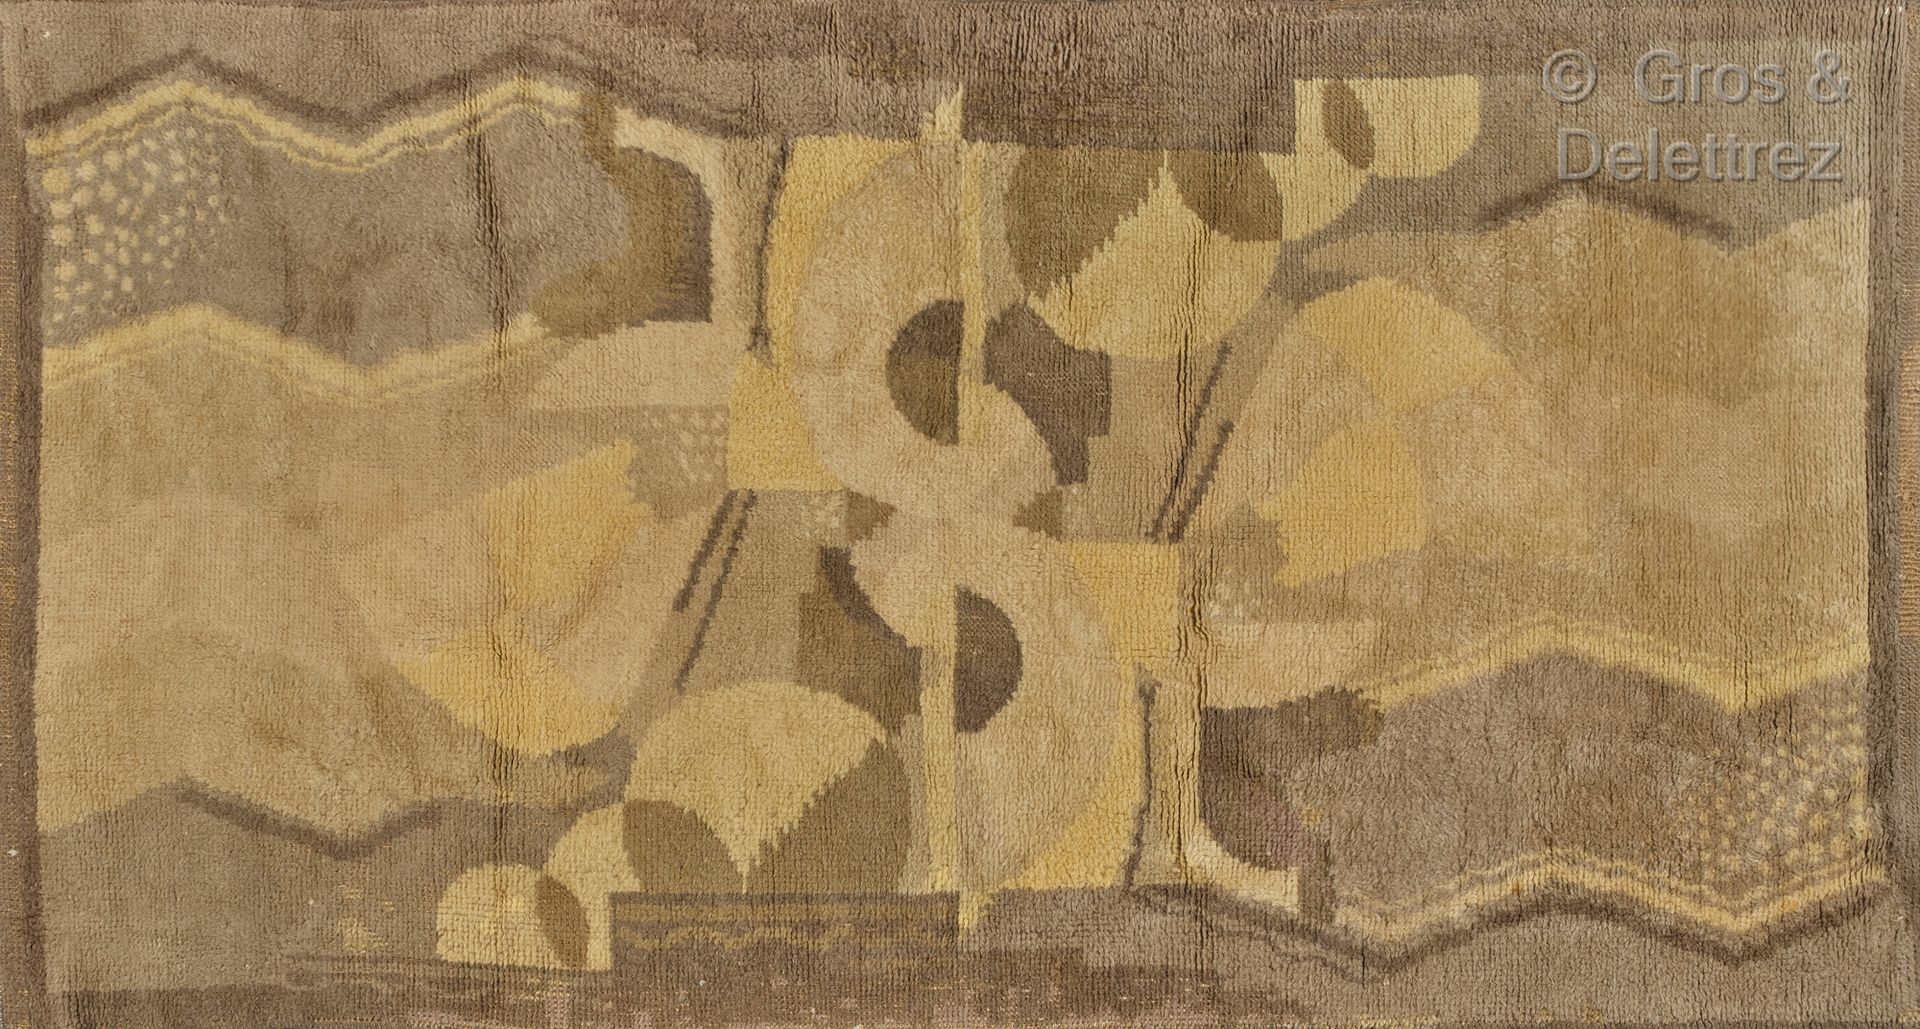 TRAVAIL DES ANNÉES 30 Tappeto in lana con decorazione geometrica.

235 x 125 cm